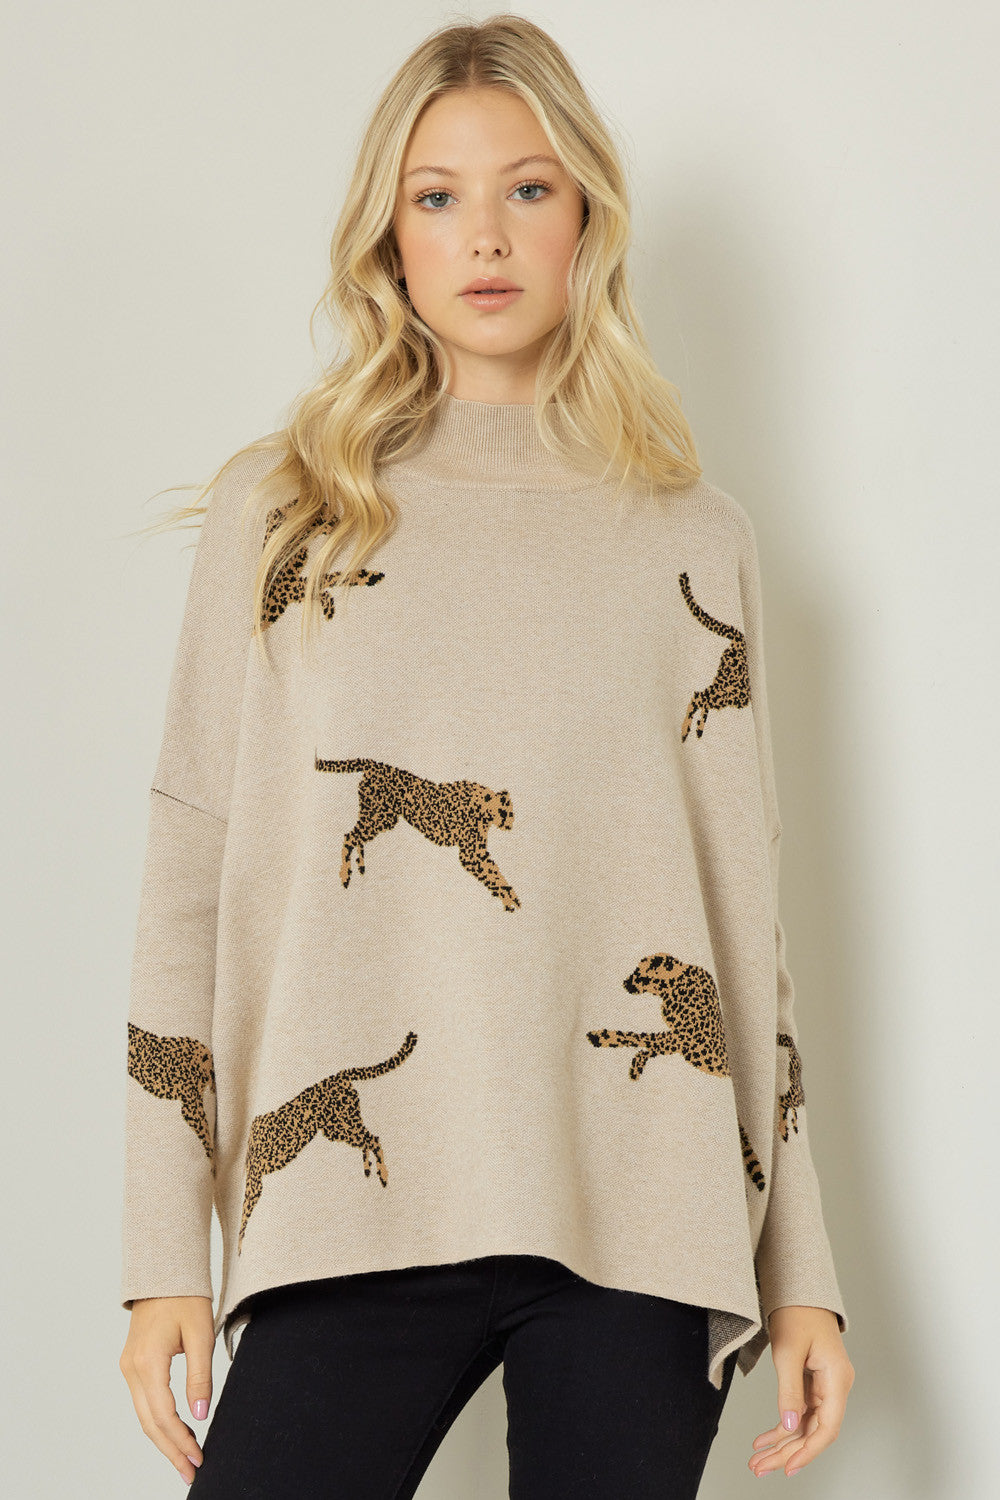 Cheetah Sweater in Oatmeal